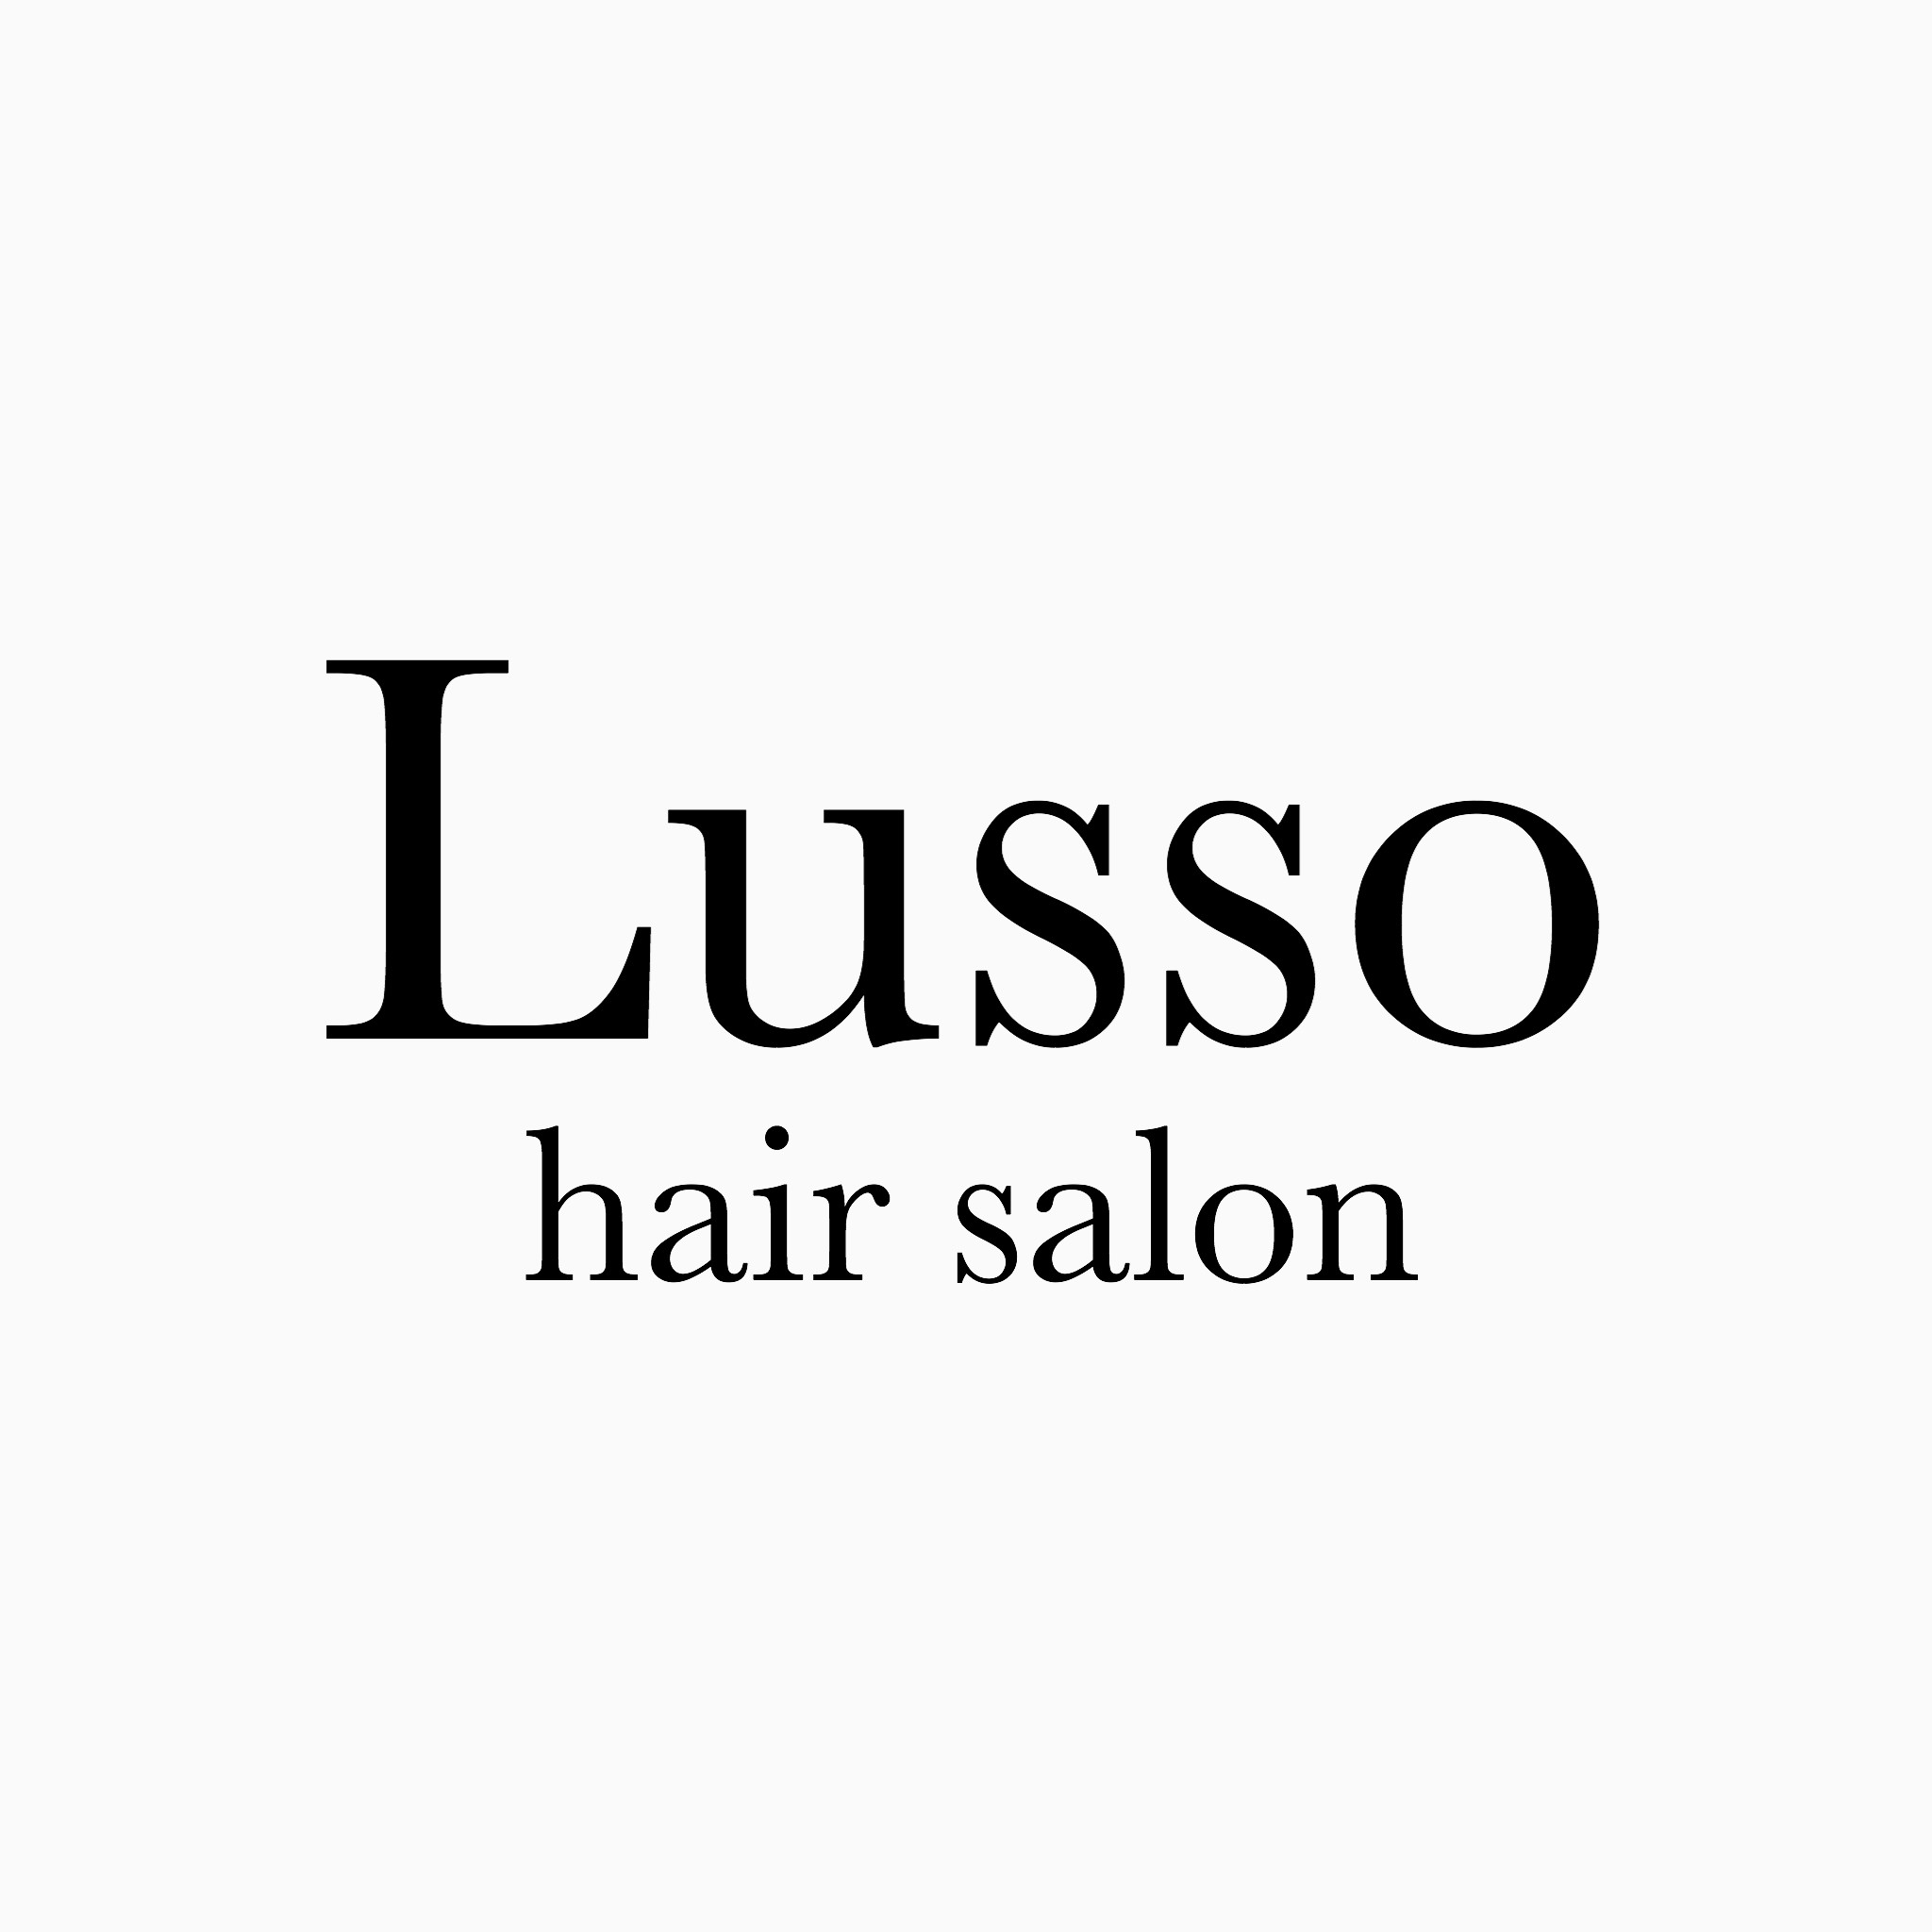 Lusso hair salon